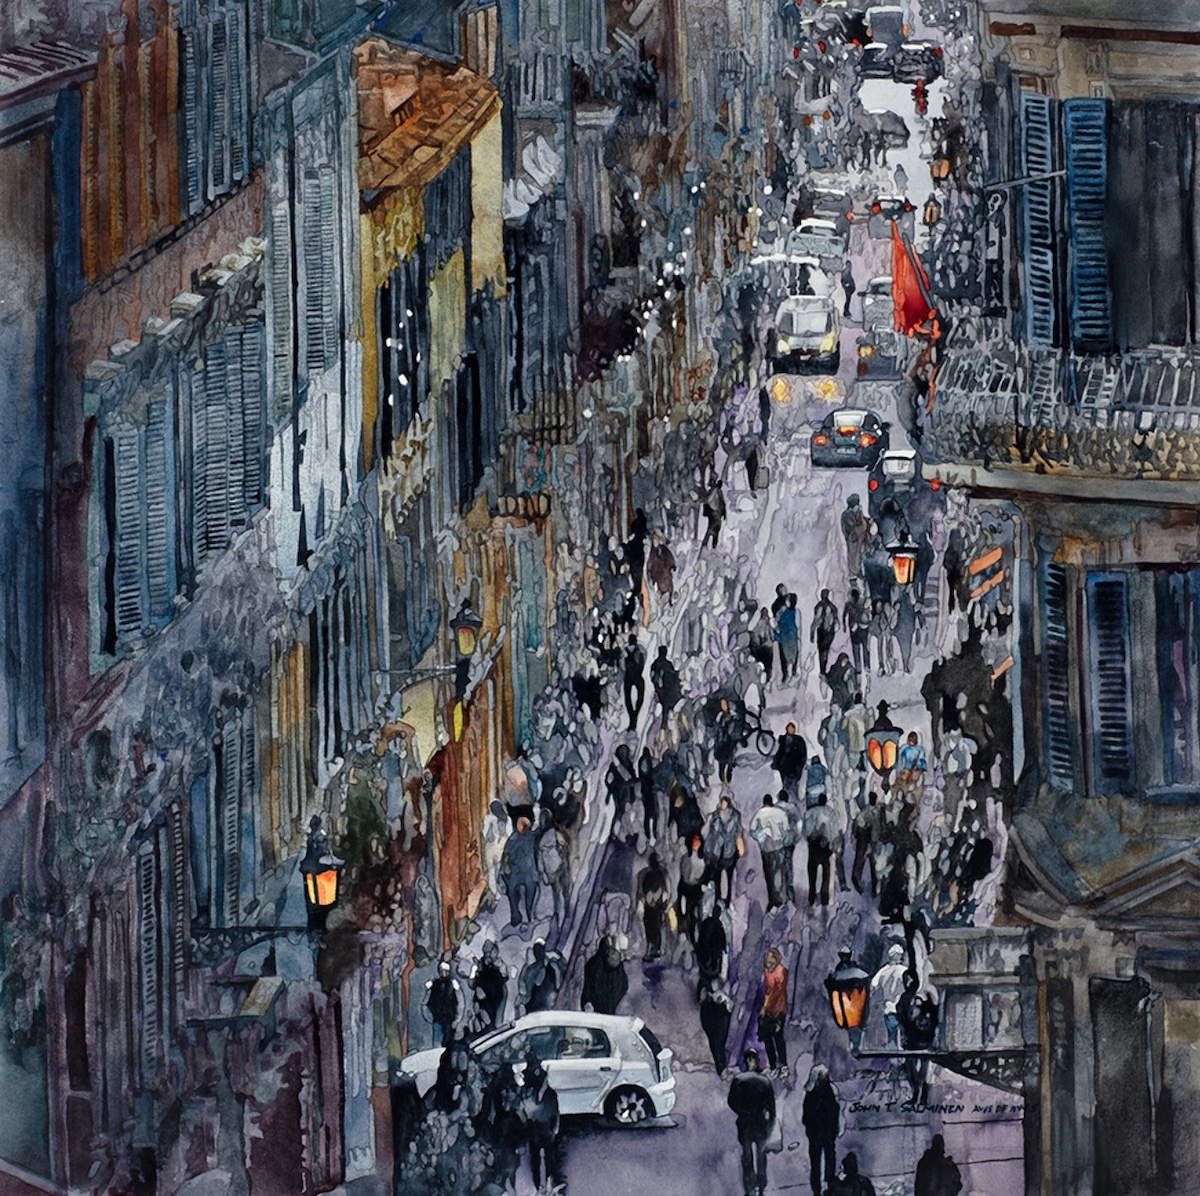 John Salminen, “Via dei Condotti,” watercolor, 36x36 in.